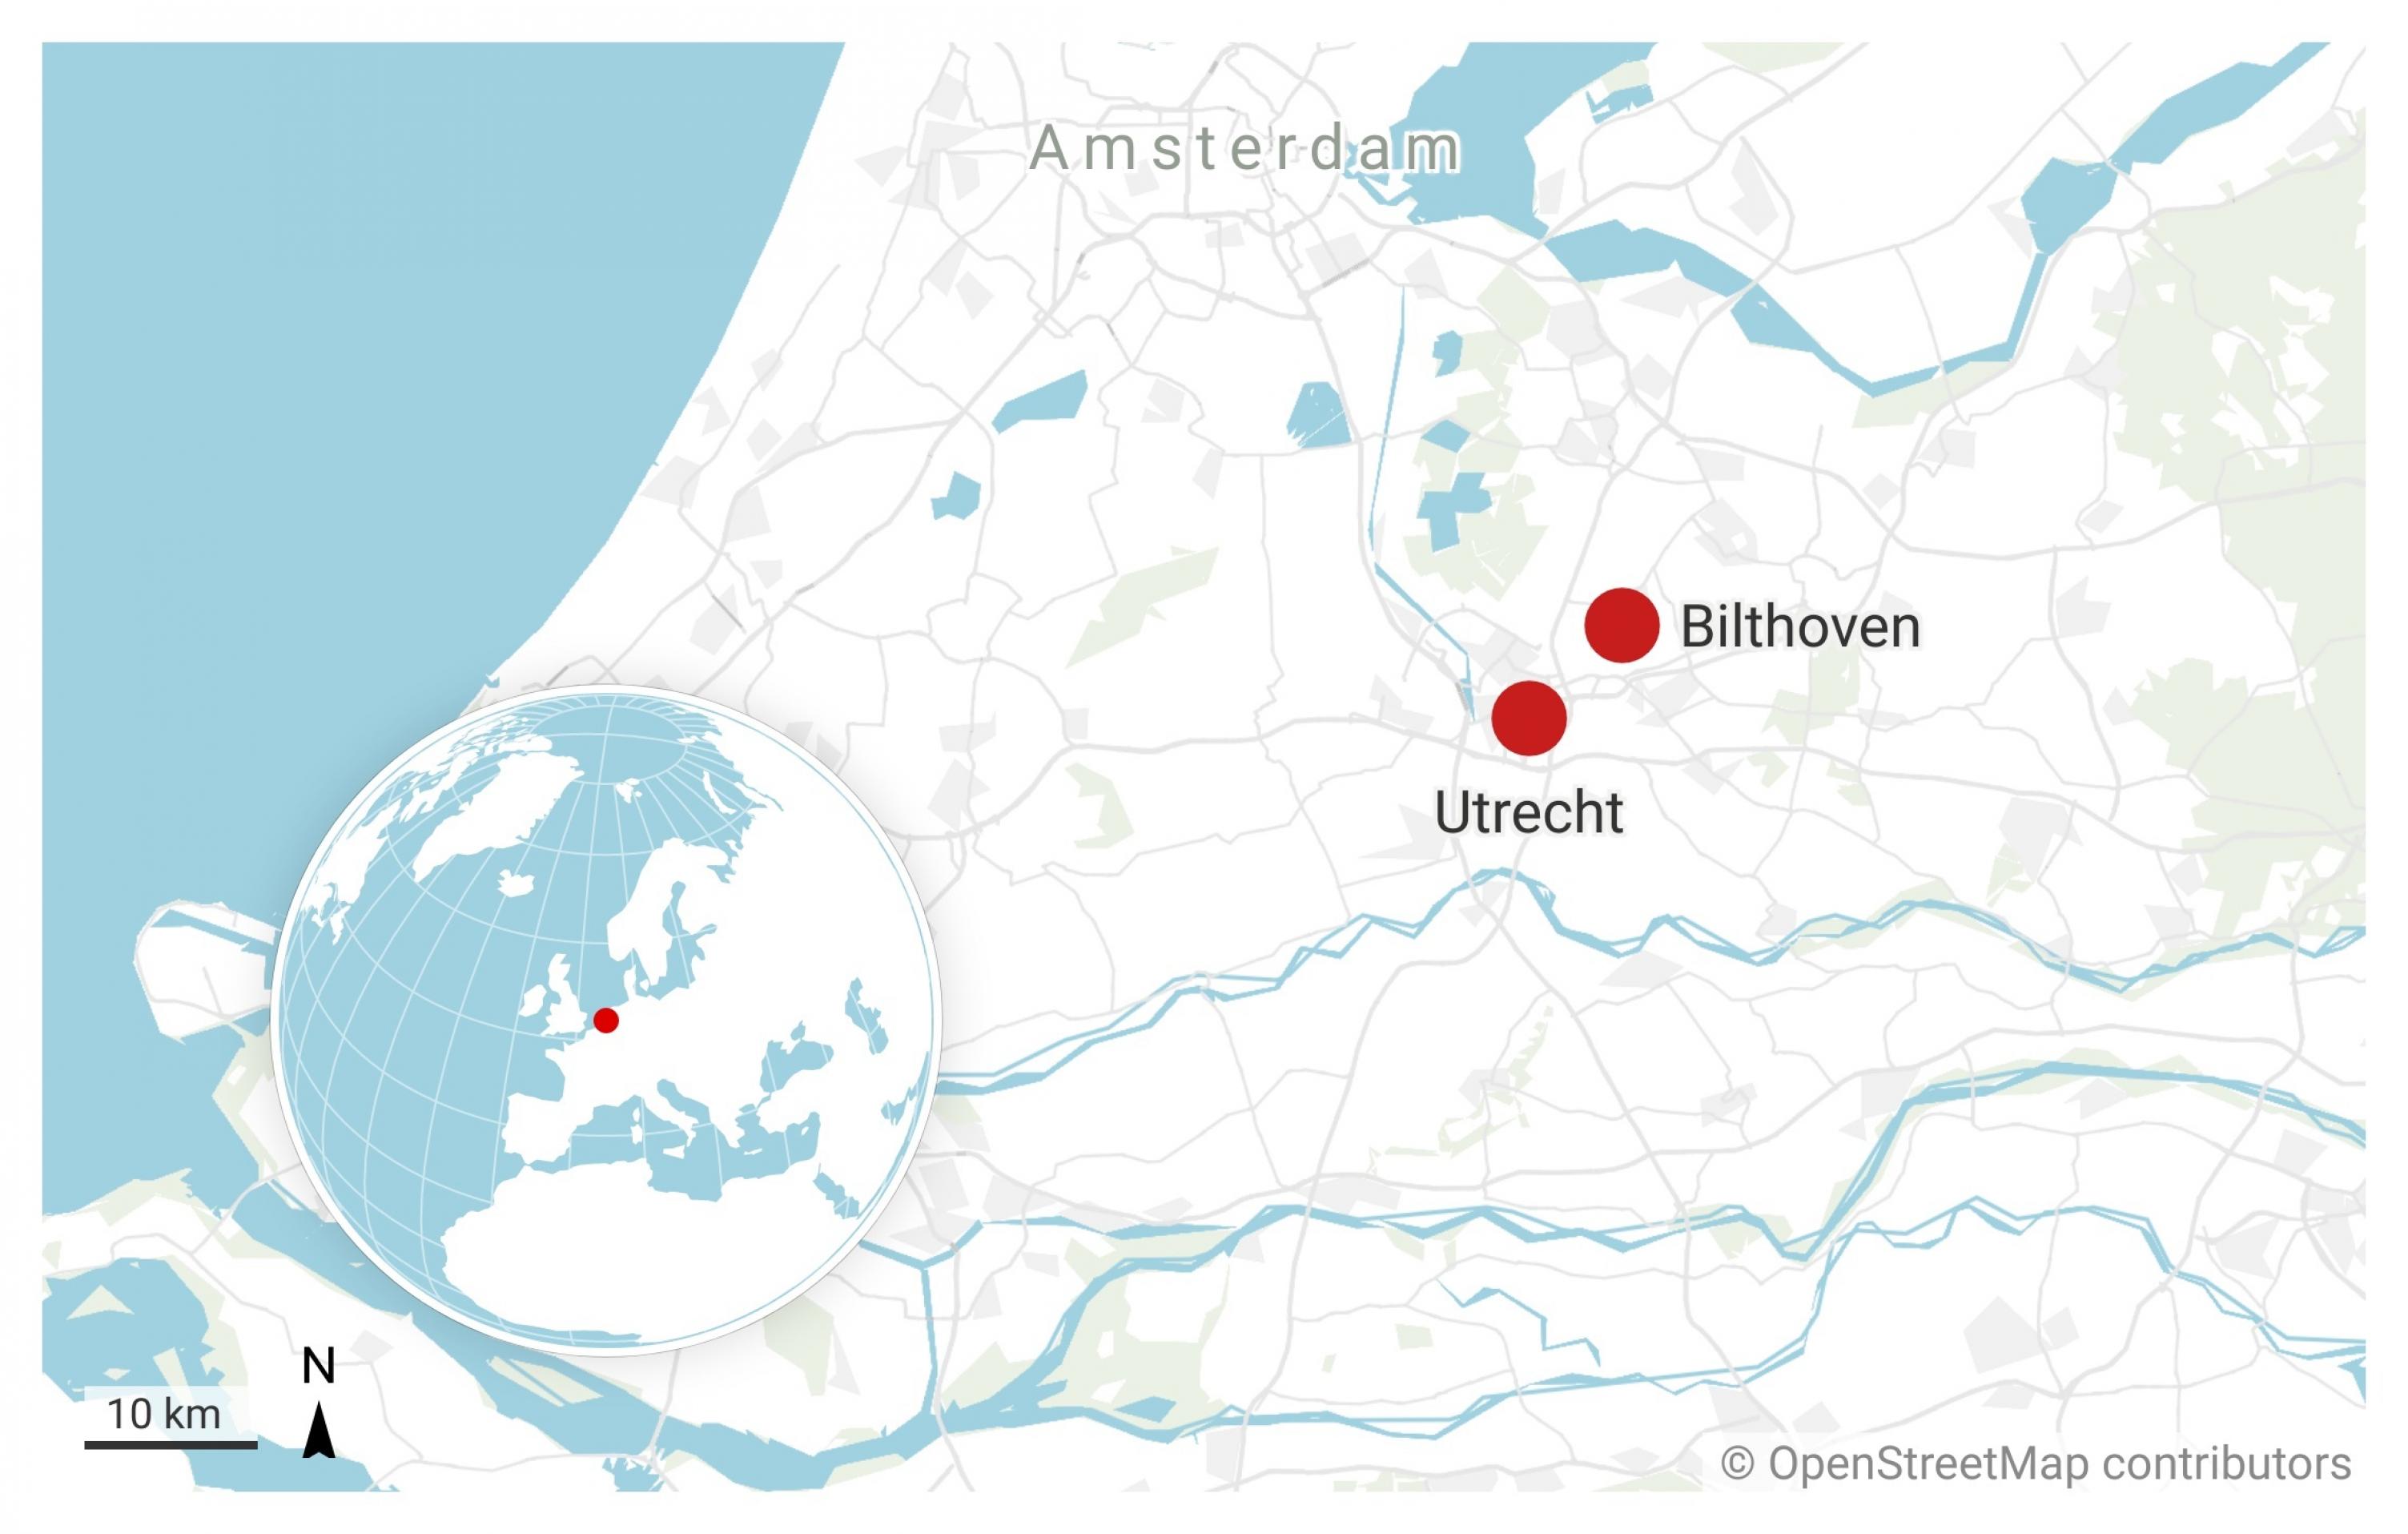 Karte der Niederlande, in der Utrecht und das nahe gelegene Bilthoven durch rote Punkte markiert sind. Ruud Jansen war um die Jahrtausendwende an der Universität Utrecht angestellt, arbeitete aber für die Arbeitsgruppe von Jan van Embden, der in Bilthoven saß.